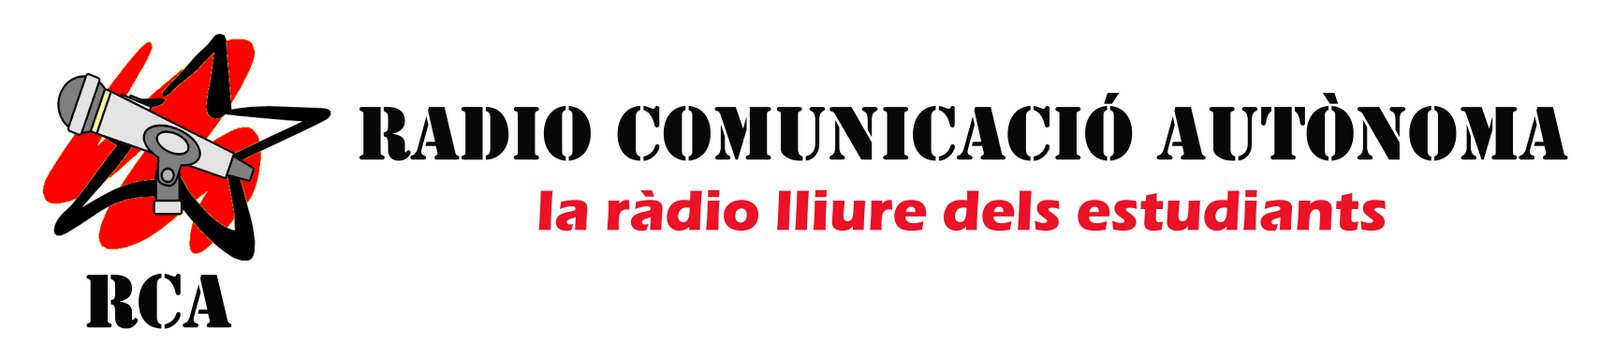 Radio Comunicació Autonoma